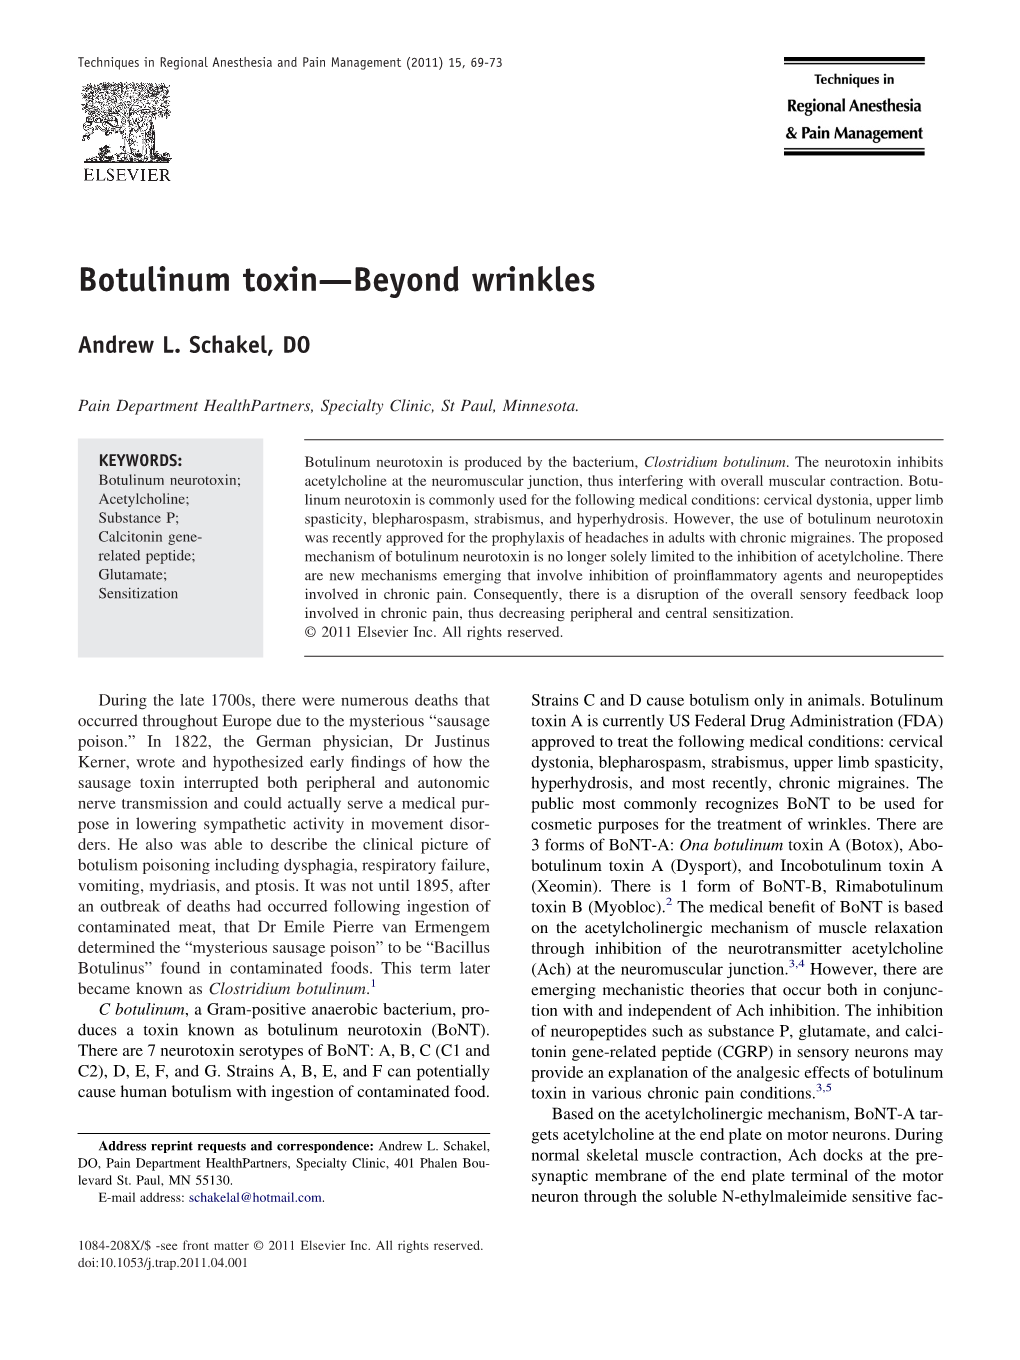 Botulinum Toxin—Beyond Wrinkles